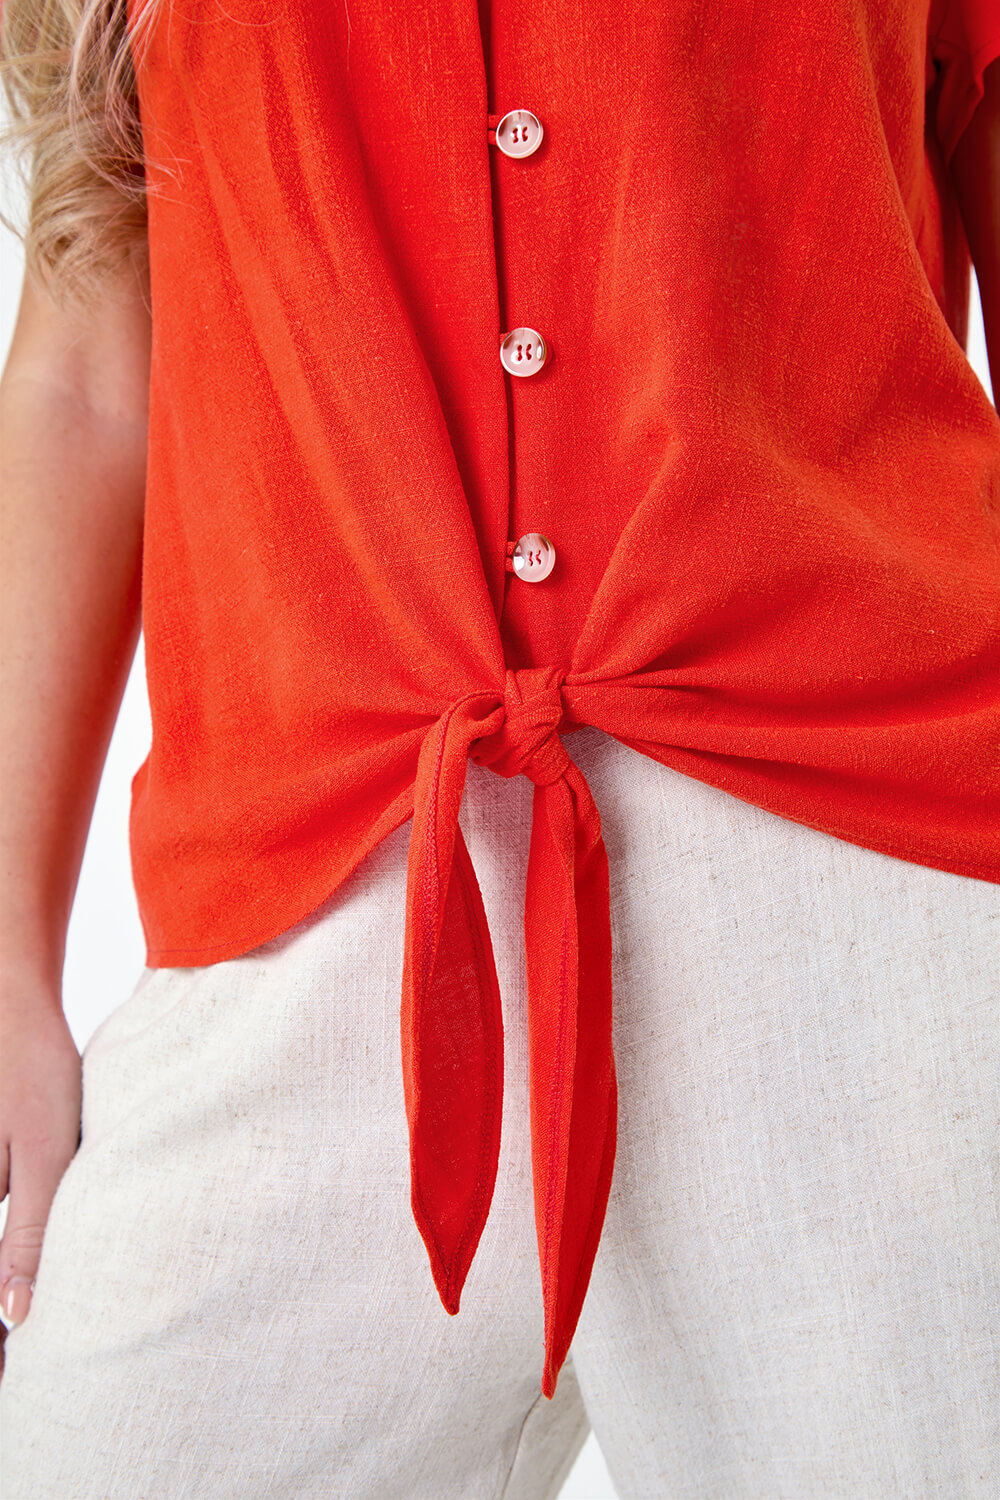 ORANGE Petite Plain Linen Blend Tie Top, Image 5 of 5